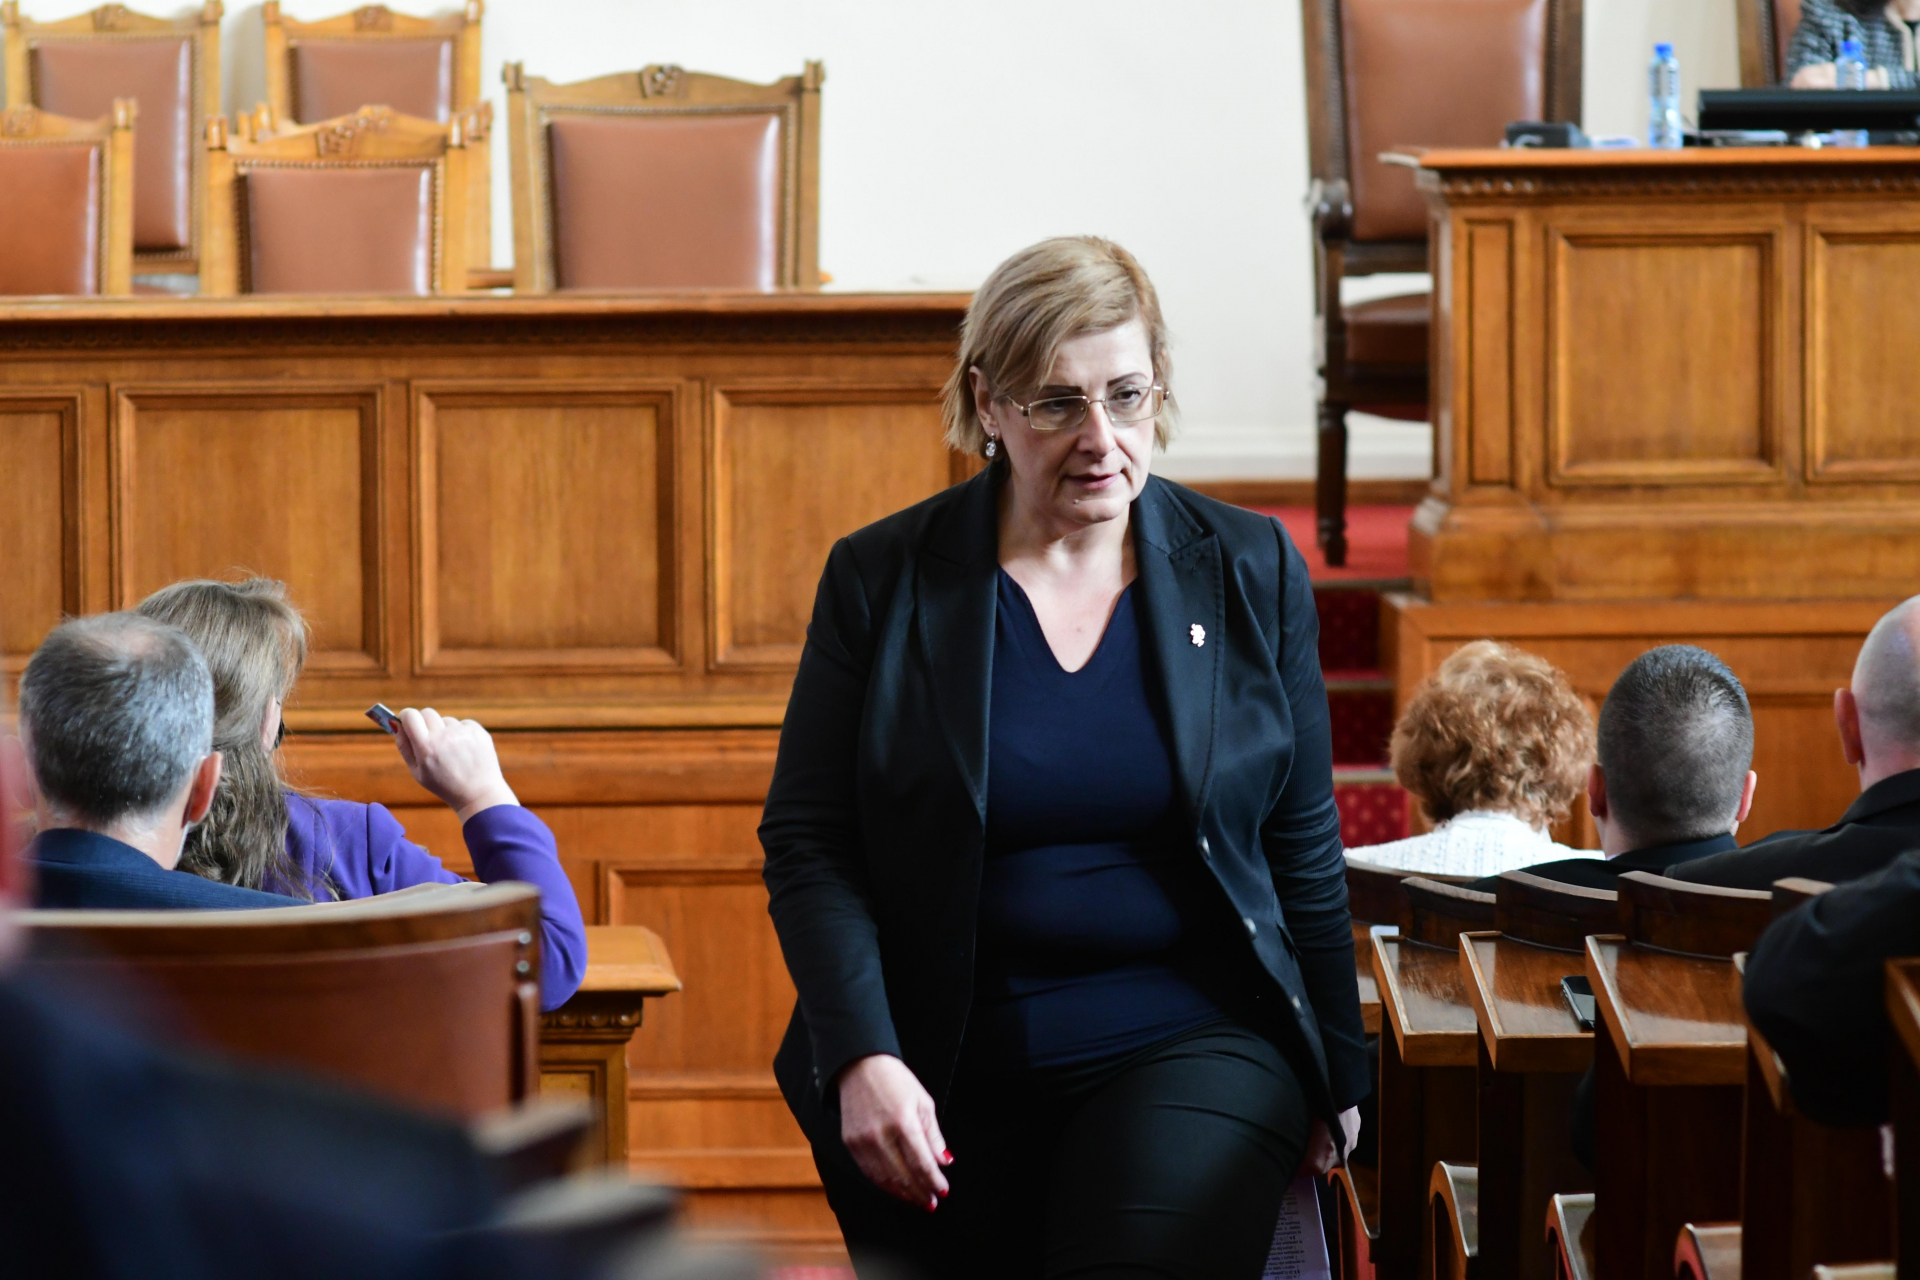 Като гръм от ясно небе: Елена Гунчева напуска парламента и "Възраждане" заради Костадинов